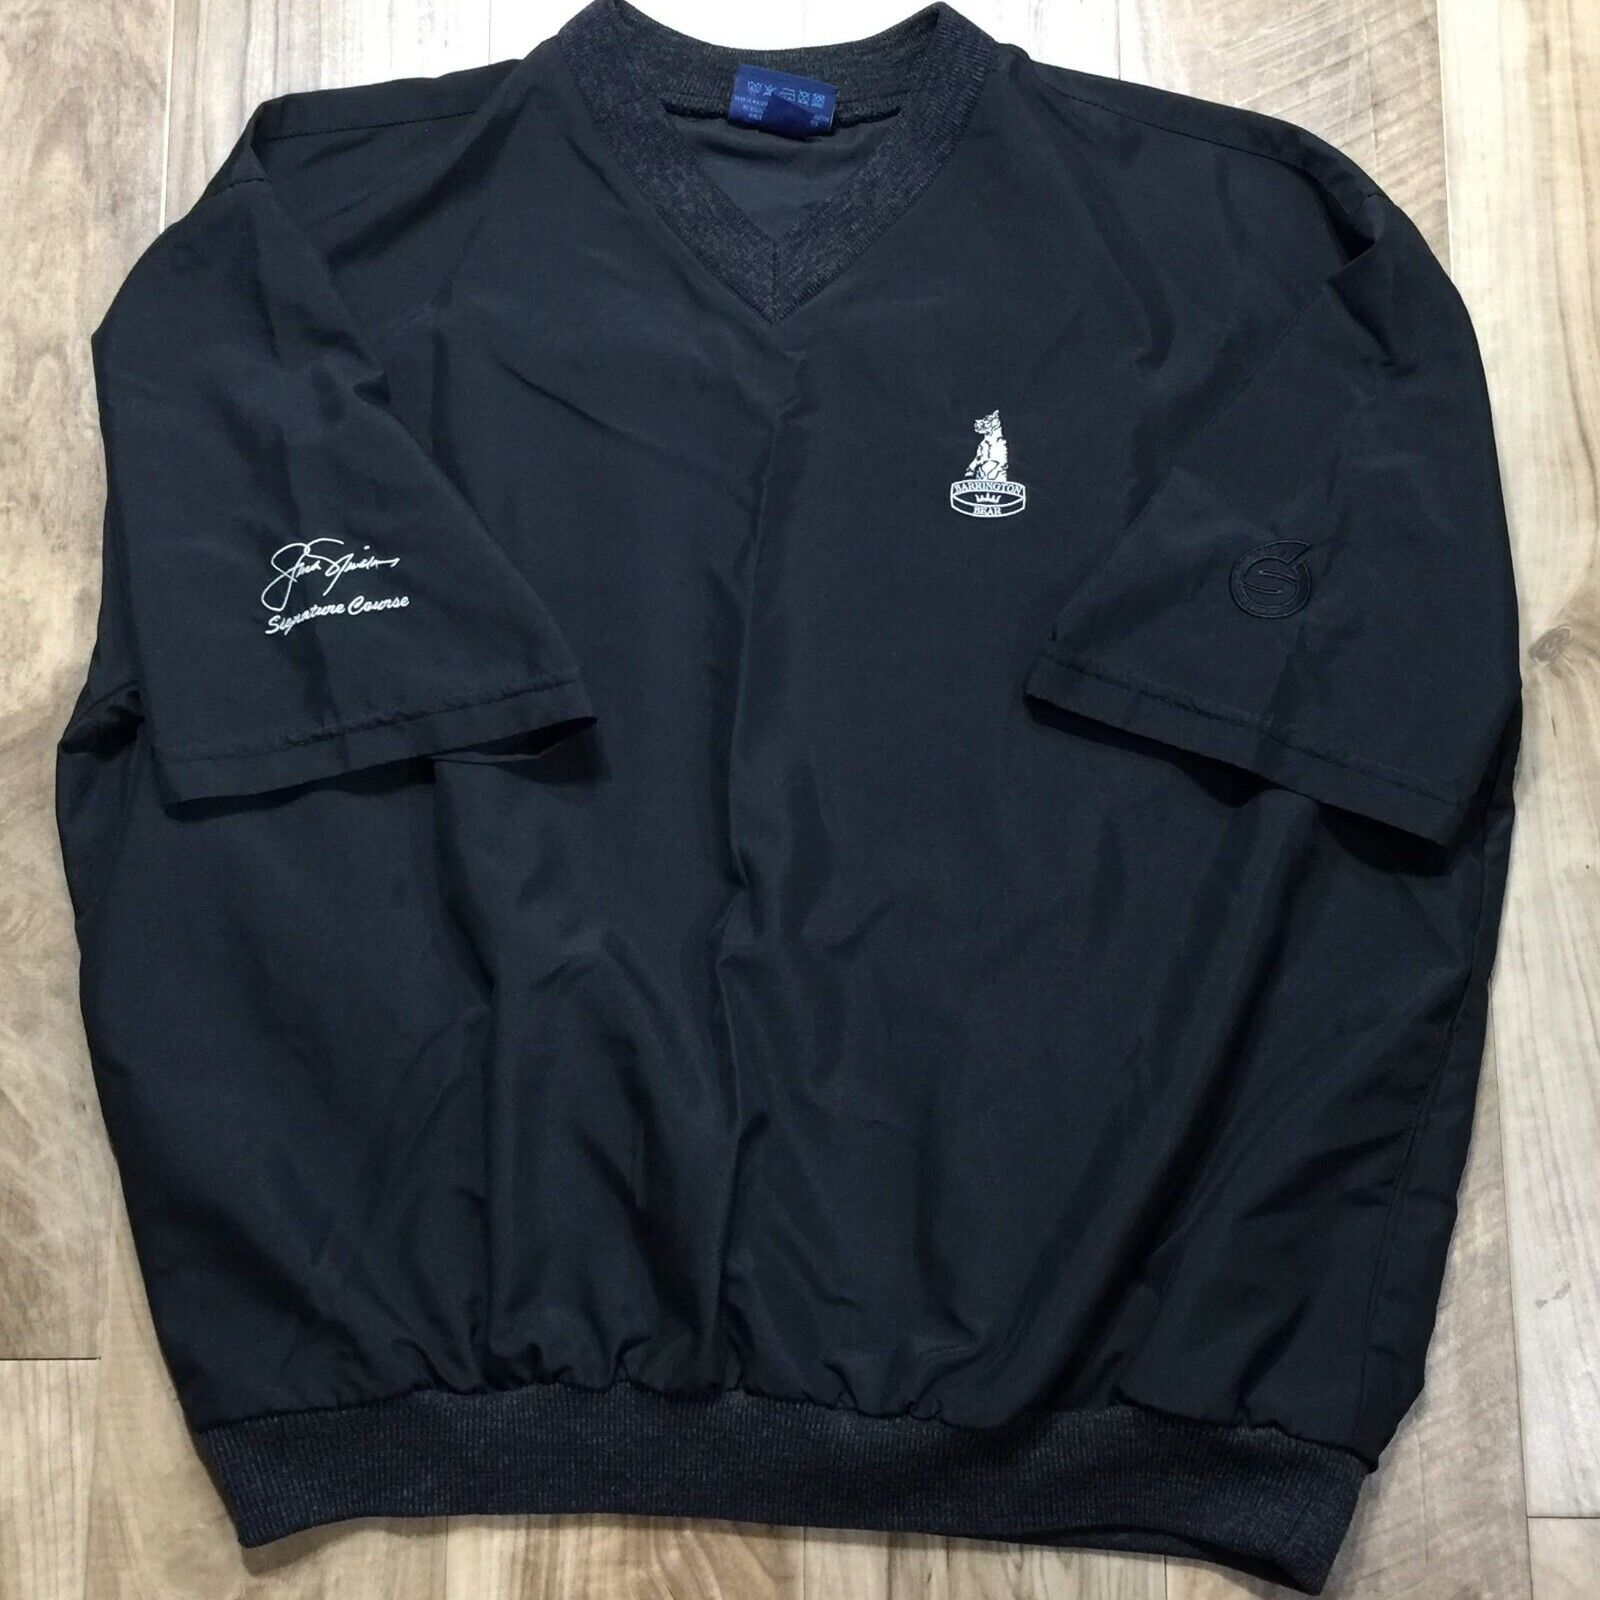 Sunderland Of Scotland Golf Wind Shirt Jacket Barrington GC Ohio Short Sleeve L